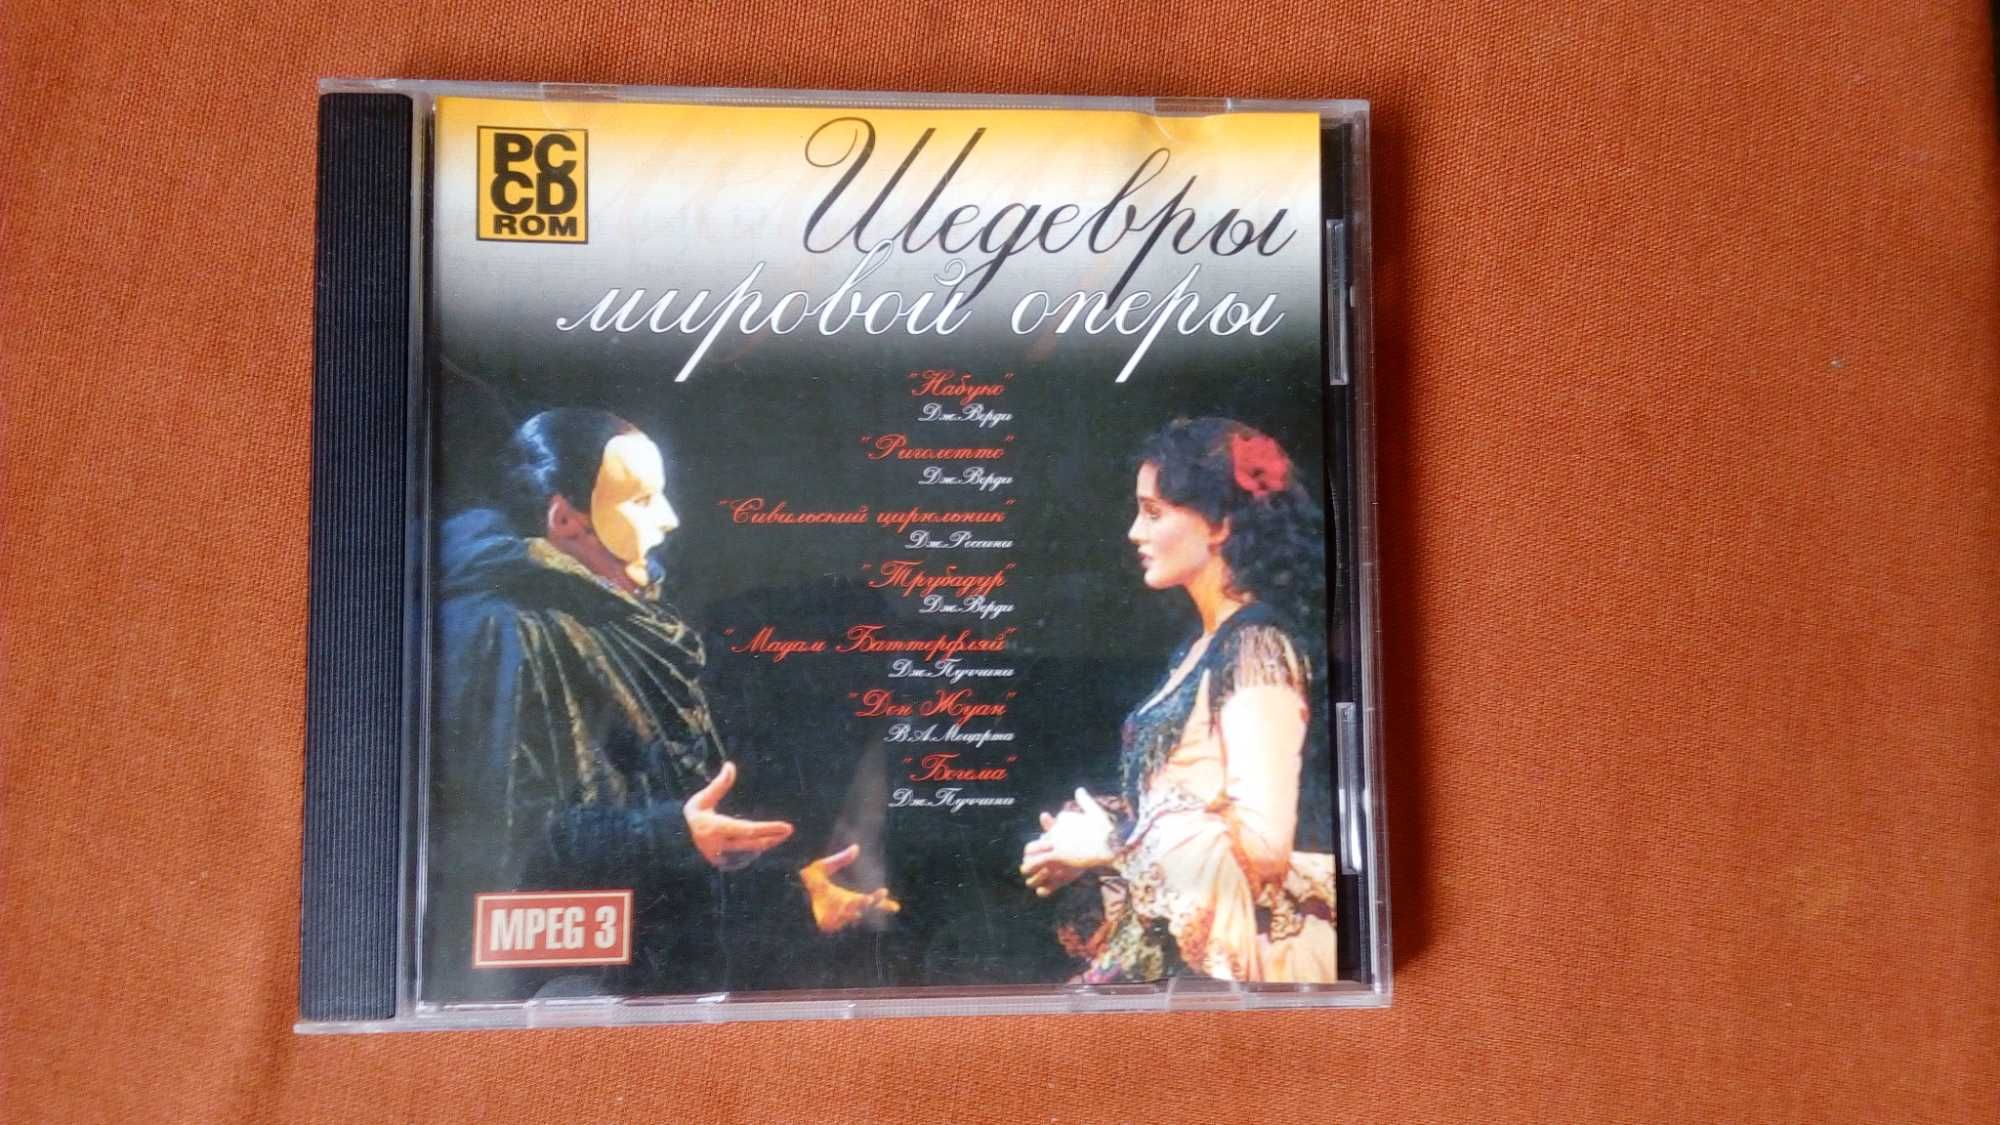 Шедевры мировой оперы MP-3 диск